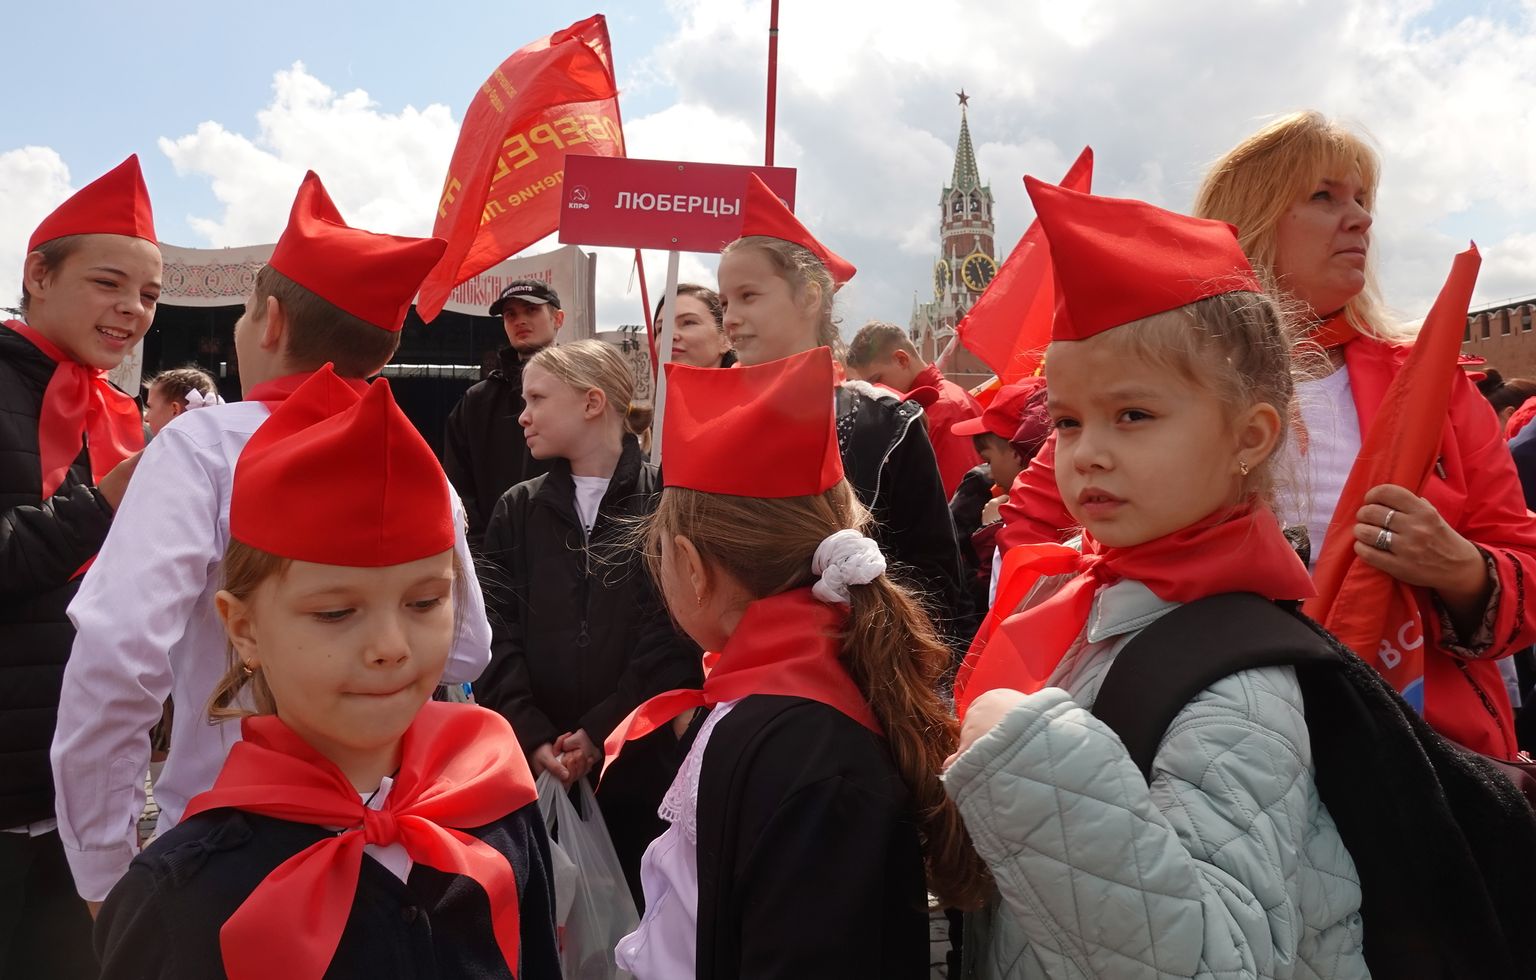 Vene koolilapsed 21. mail Moskvas Punasel väljakul kommunistliku partei korraldatud pioneeriüritusel.